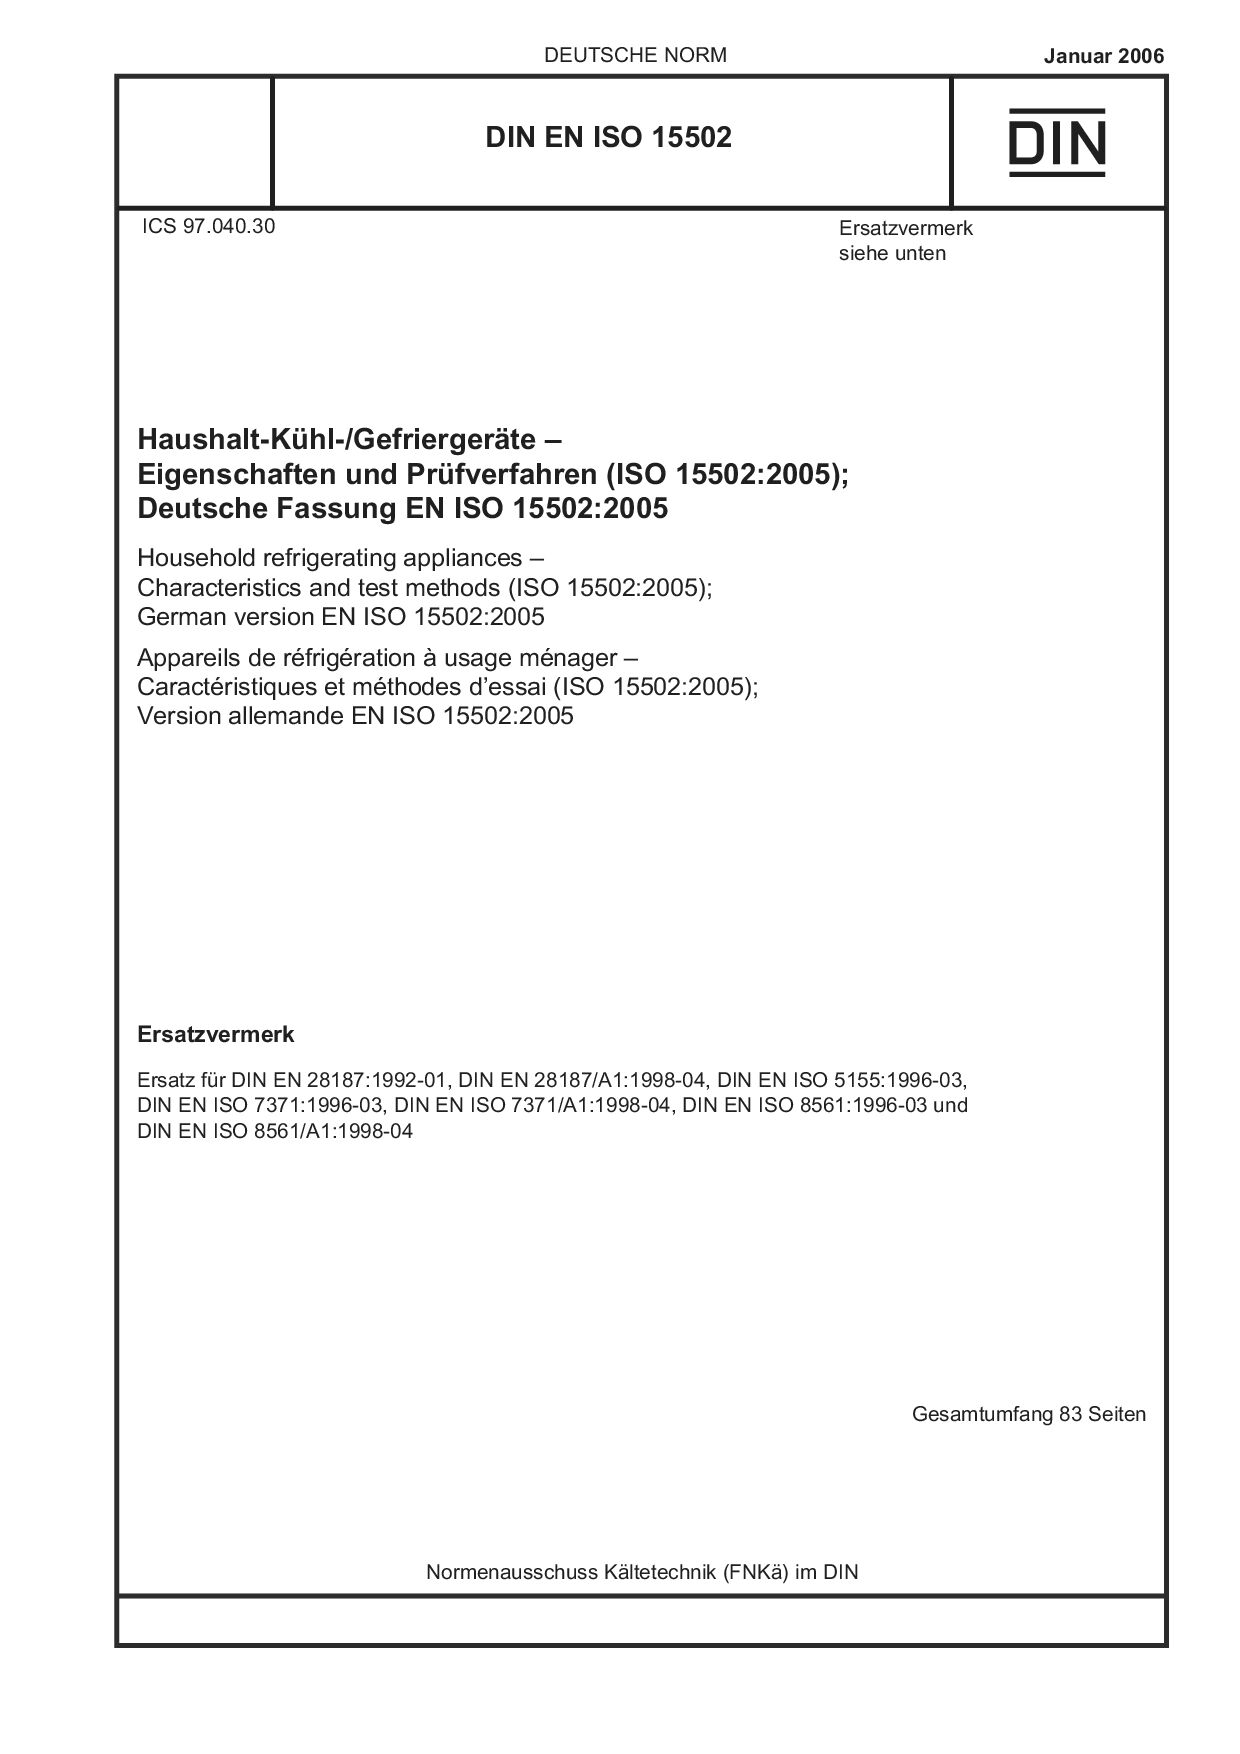 DIN EN ISO 15502:2006